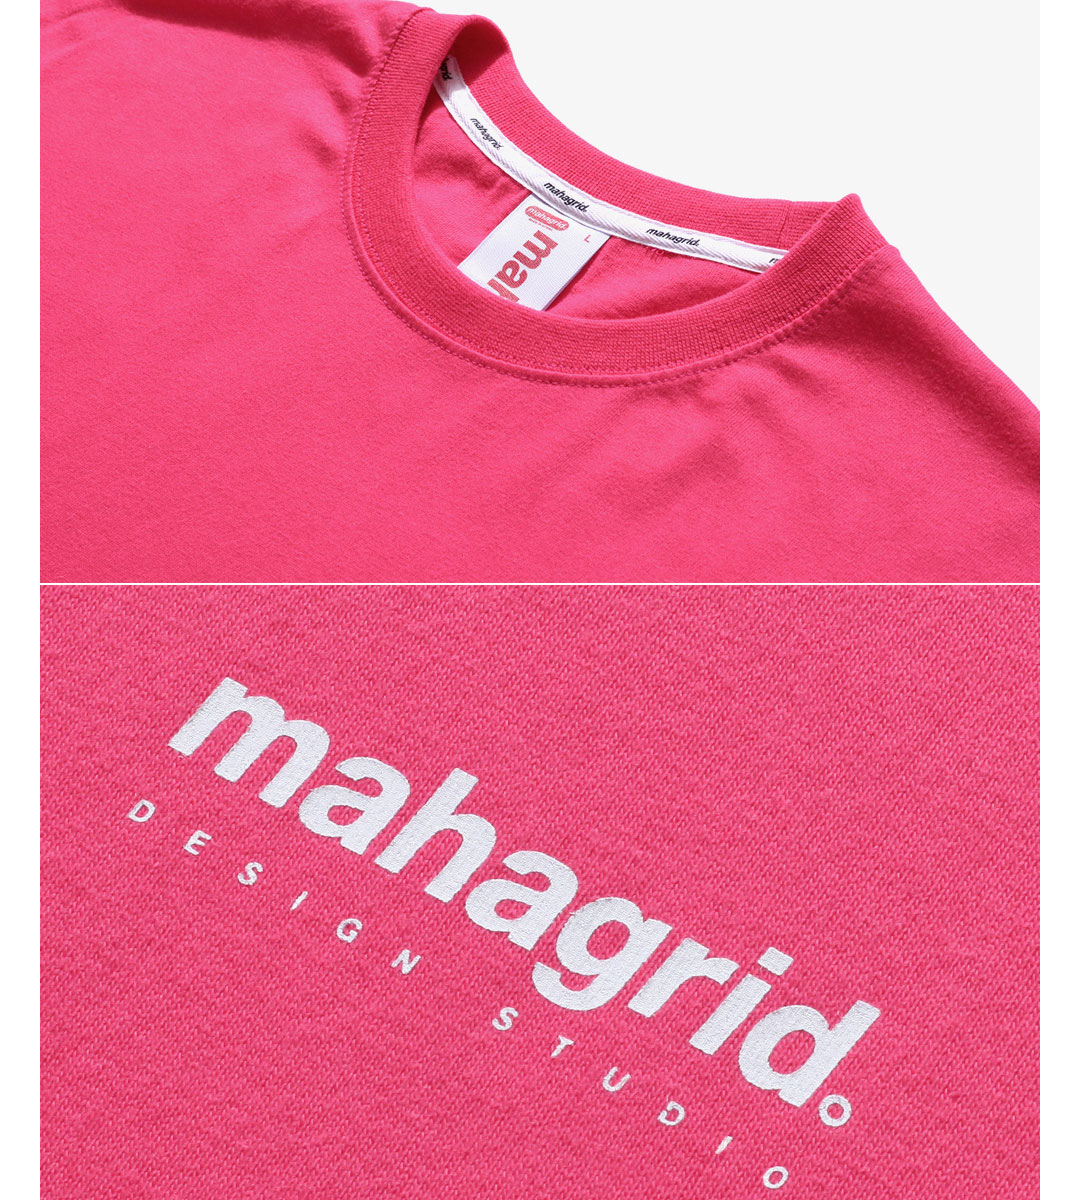 Mahagrid マハグリッド Origin ロゴtシャツ 全8色 Tシャツ Daese Tokyo デセトウキョウ